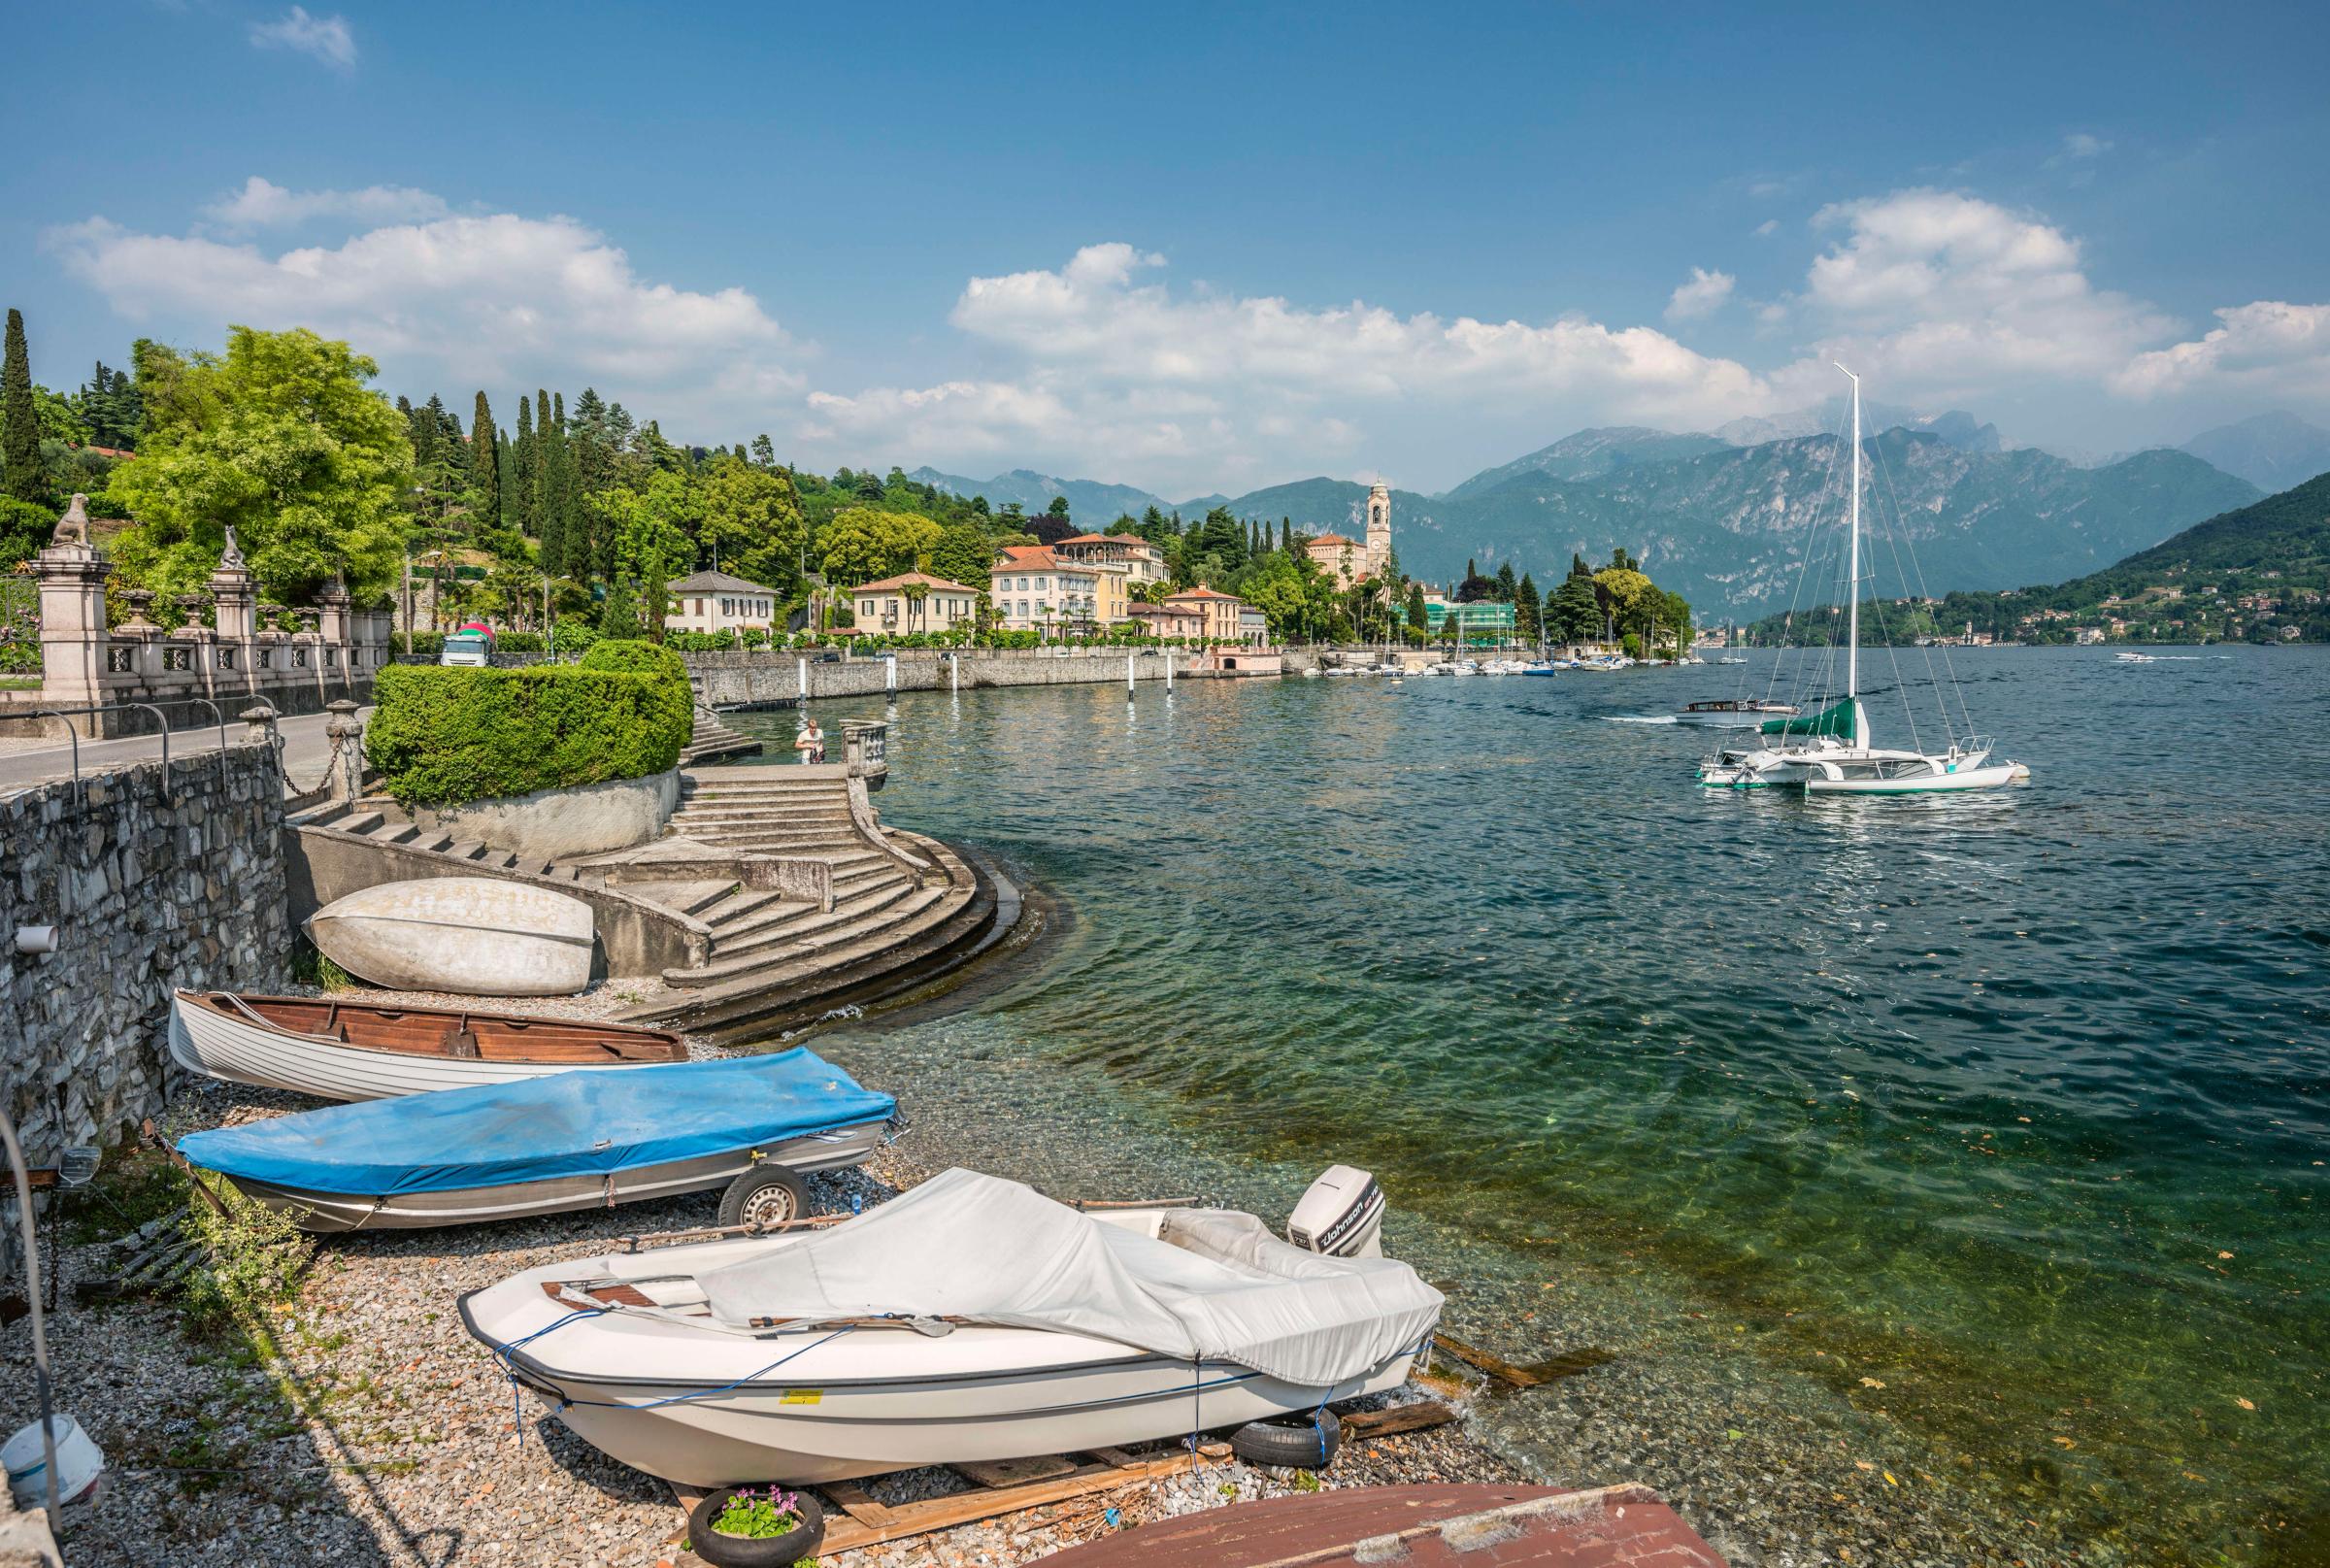 View at the waterfront of Lenno at Lake Como.